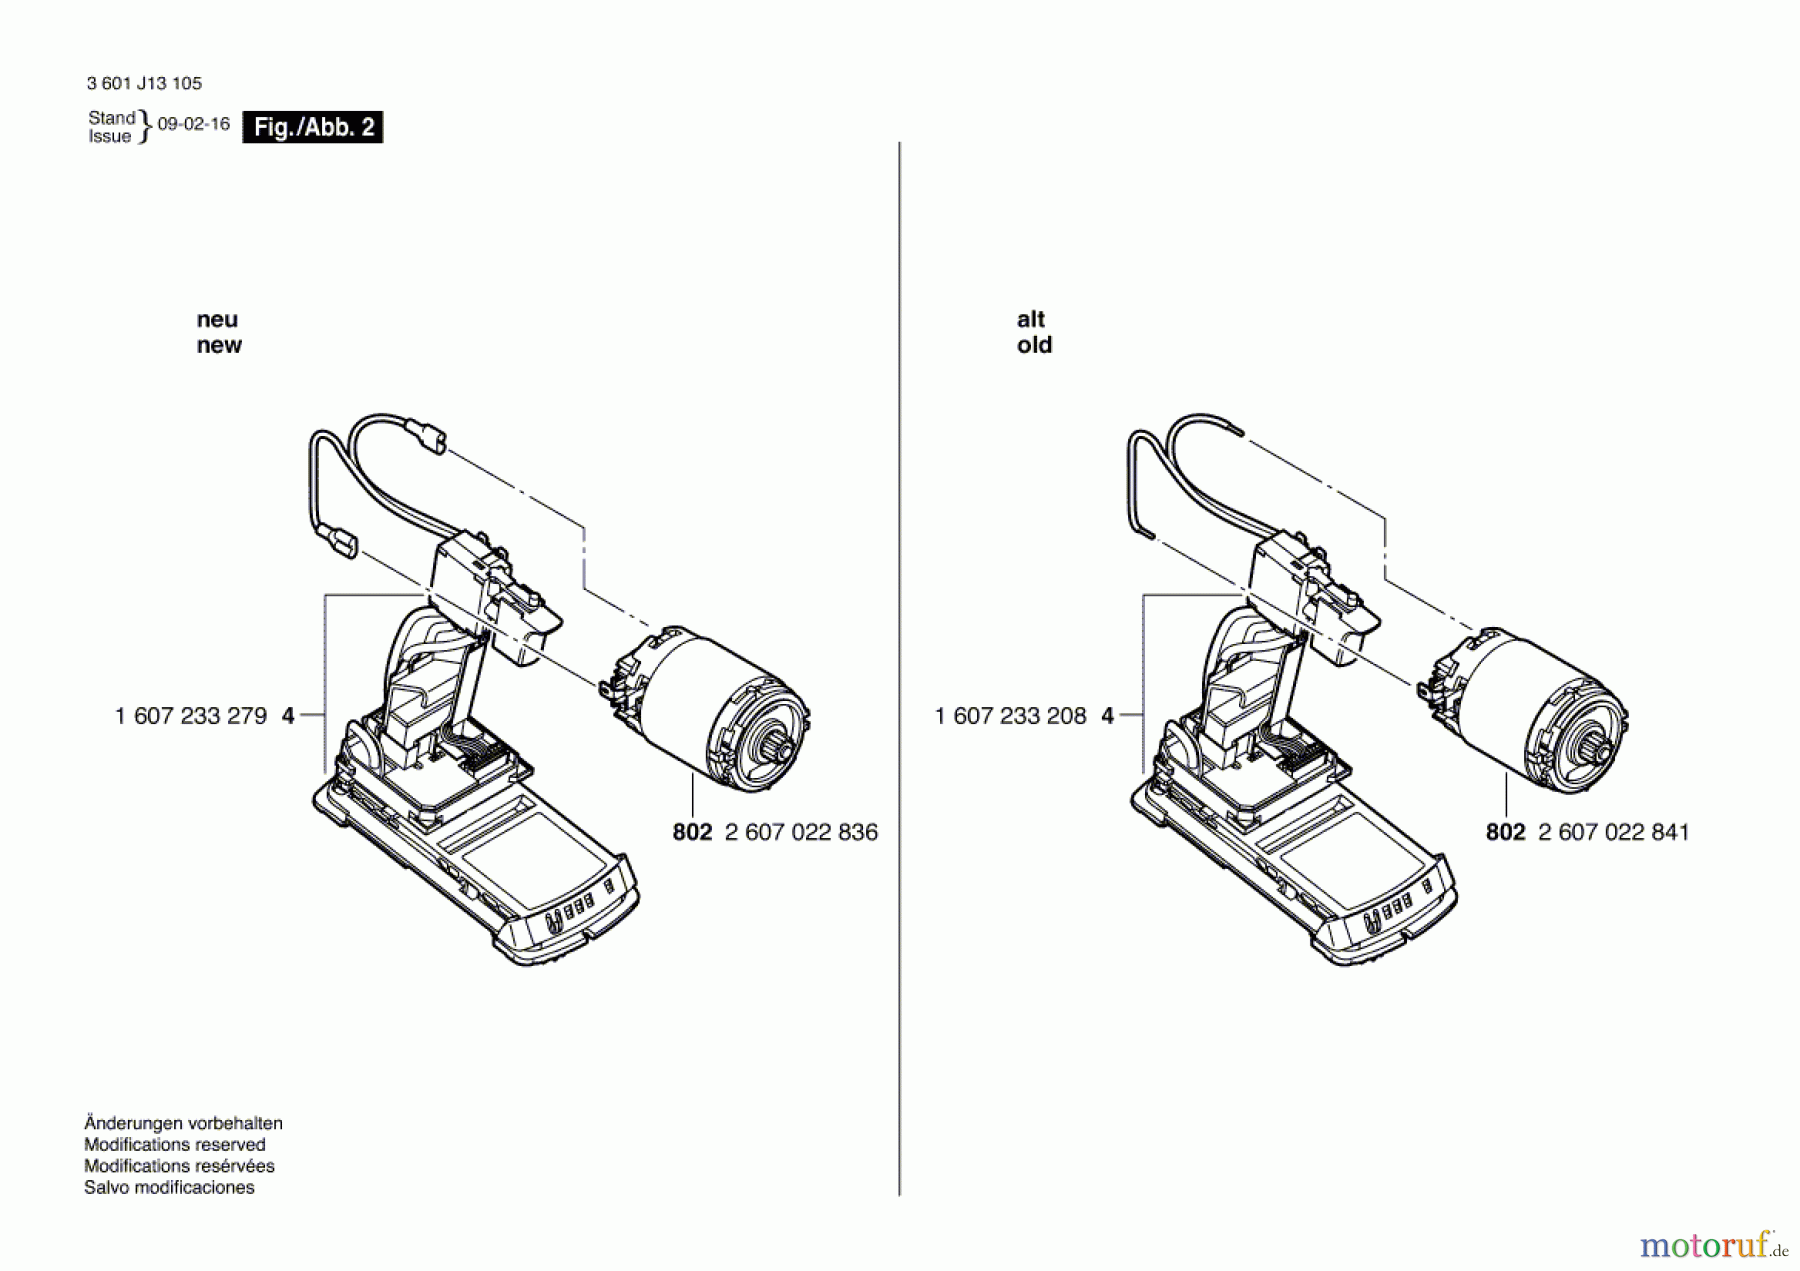  Bosch Akku Werkzeug Akku-Schlagbohrmaschine BACHDD-36 V-LI Seite 2